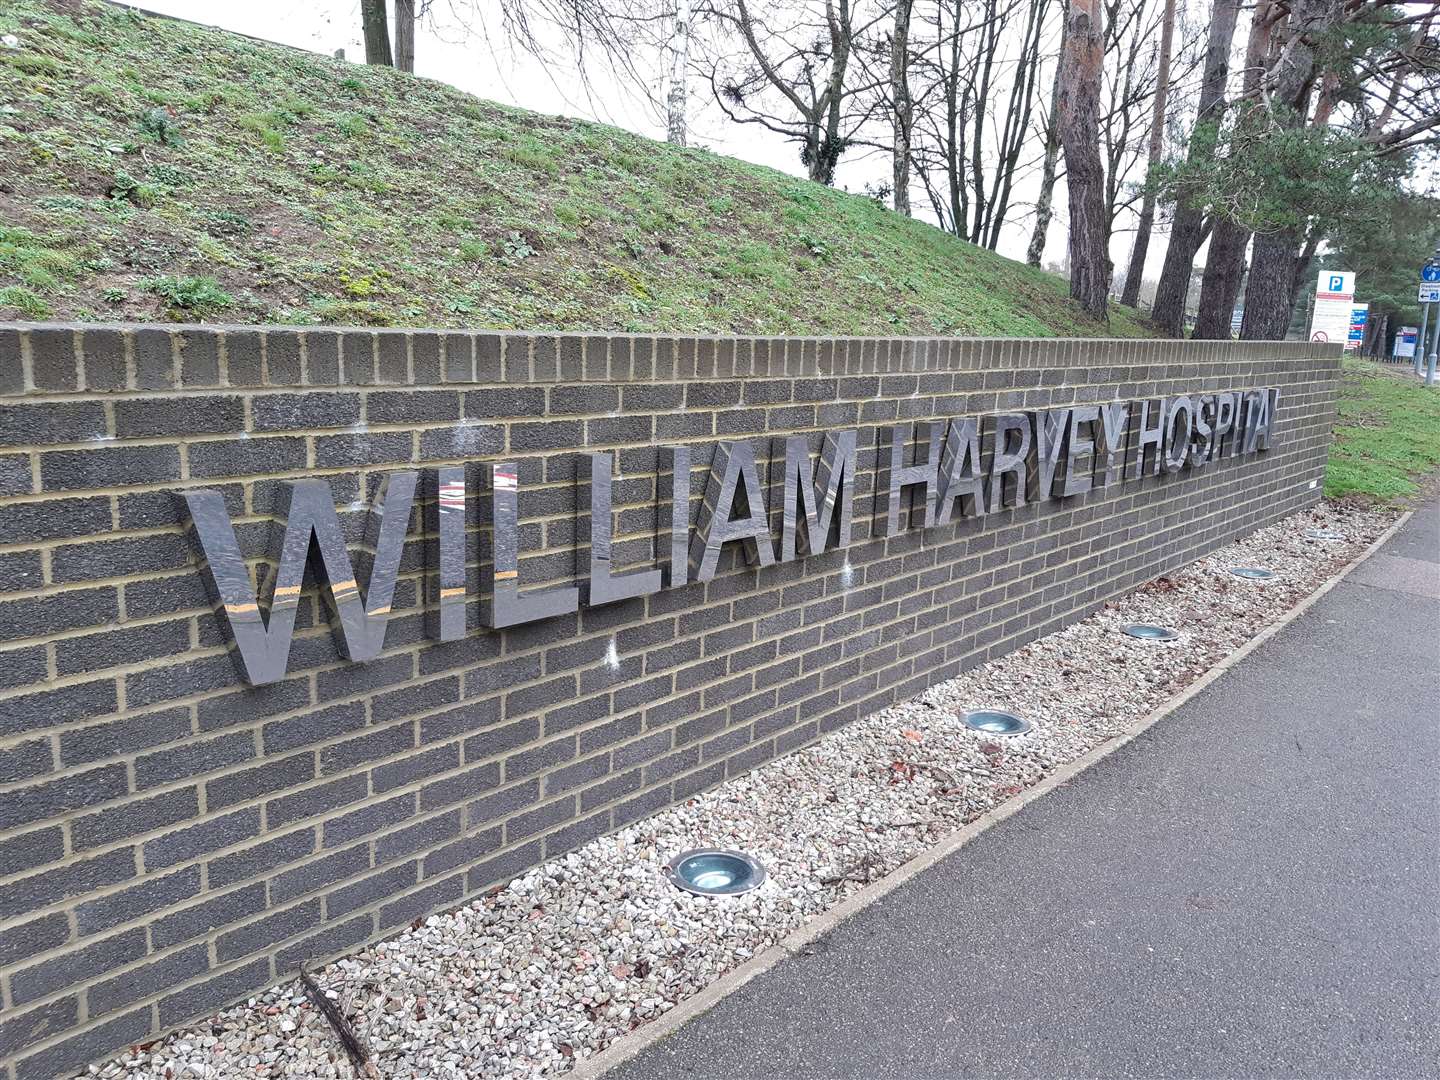 William Harvey Hospital in Ashford